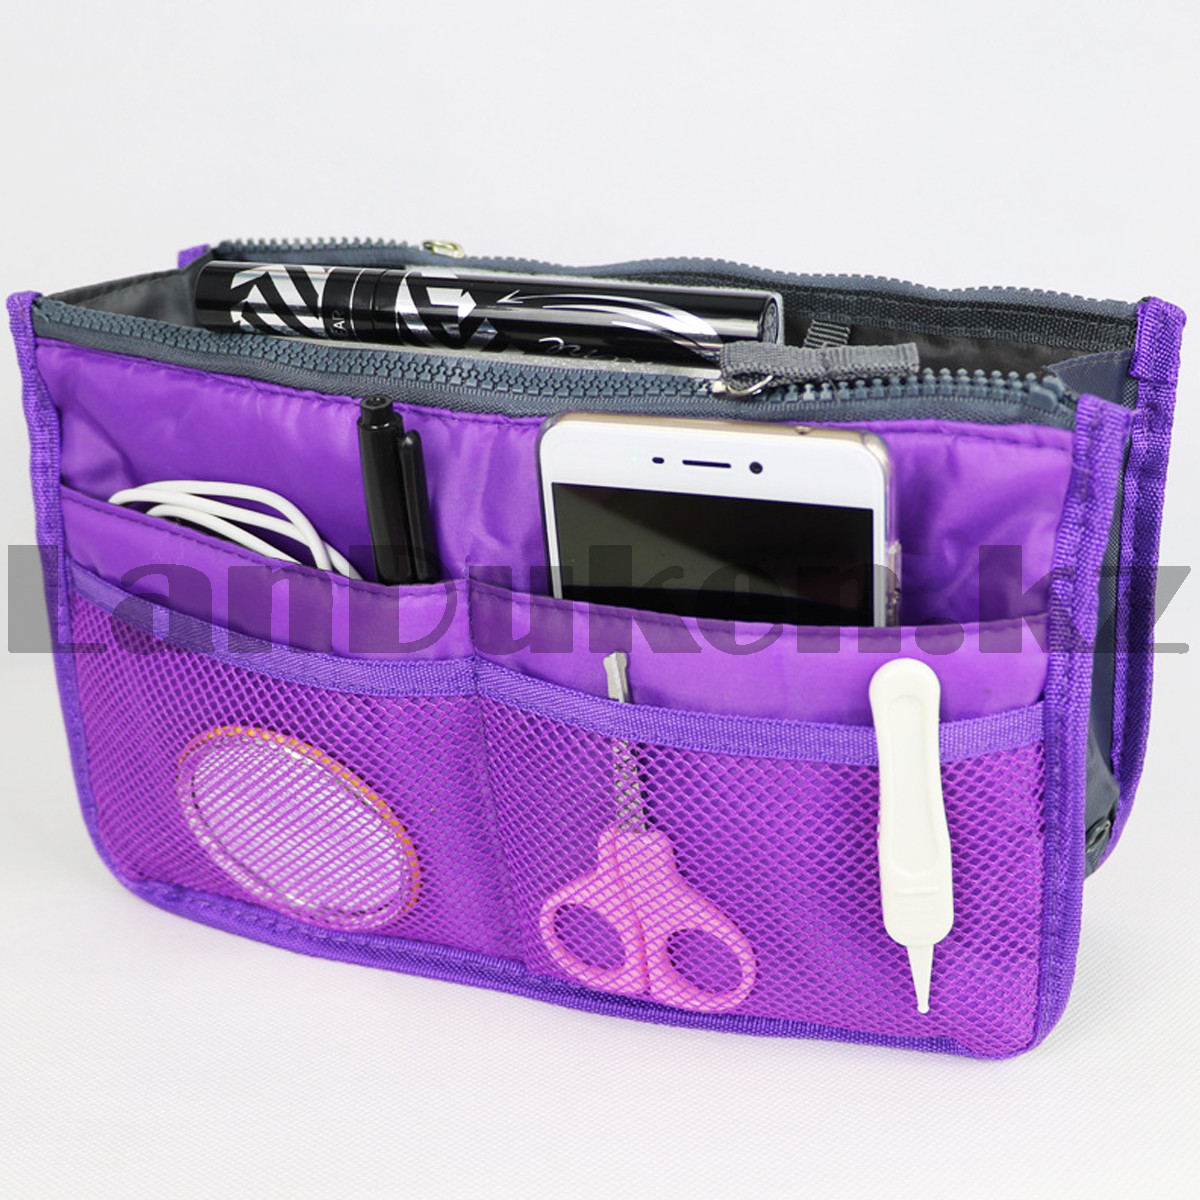 Органайзер для сумки фиолетовый, фото 1